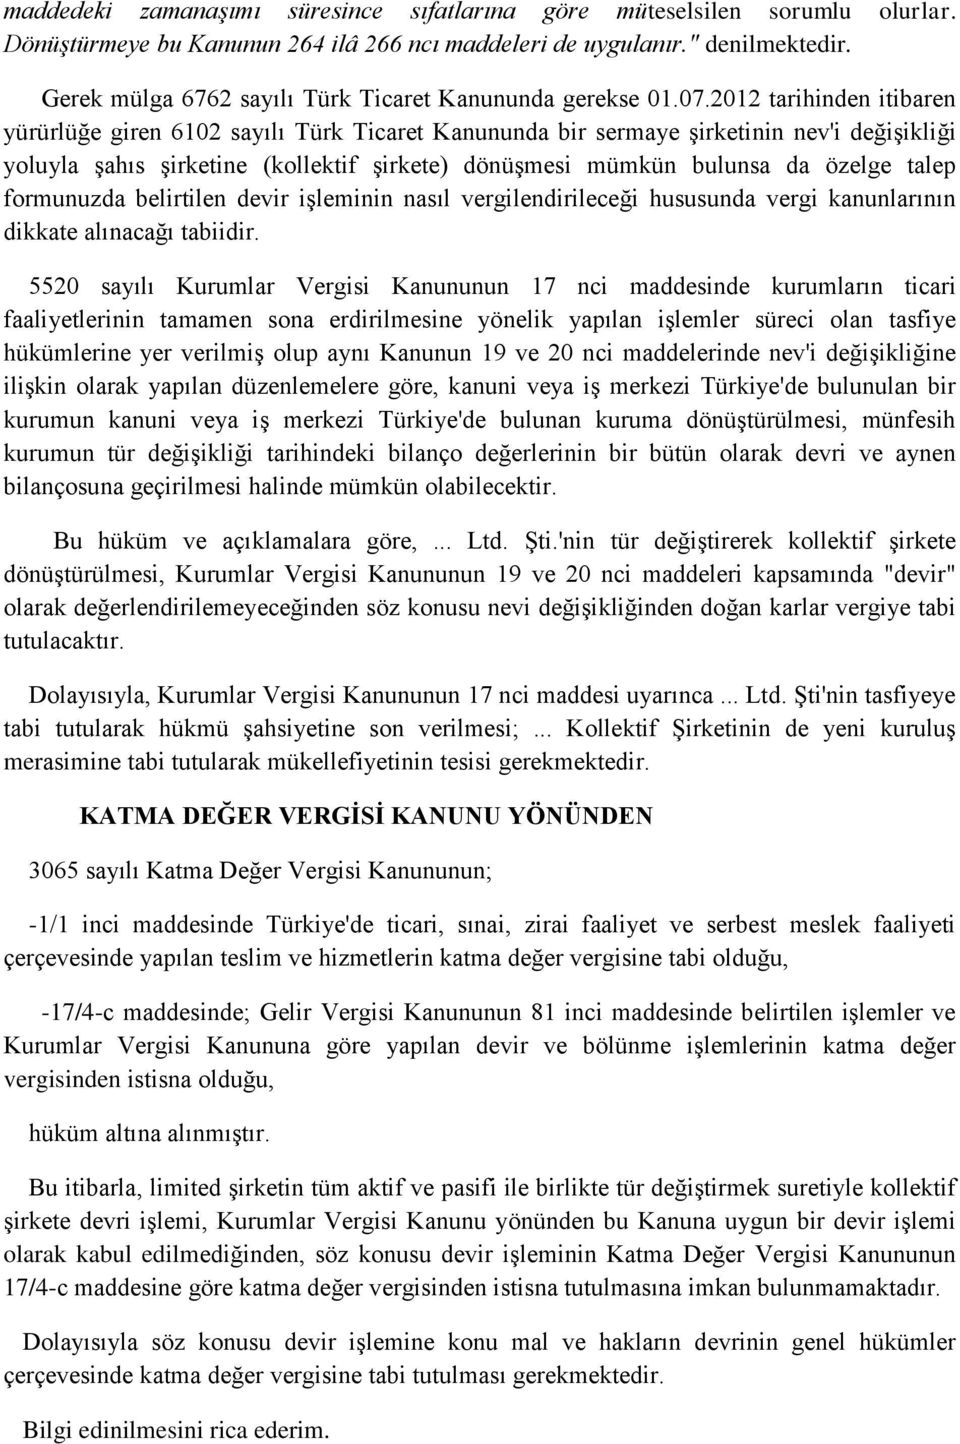 2012 tarihinden itibaren yürürlüğe giren 6102 sayılı Türk Ticaret Kanununda bir sermaye şirketinin nev'i değişikliği yoluyla şahıs şirketine (kollektif şirkete) dönüşmesi mümkün bulunsa da özelge